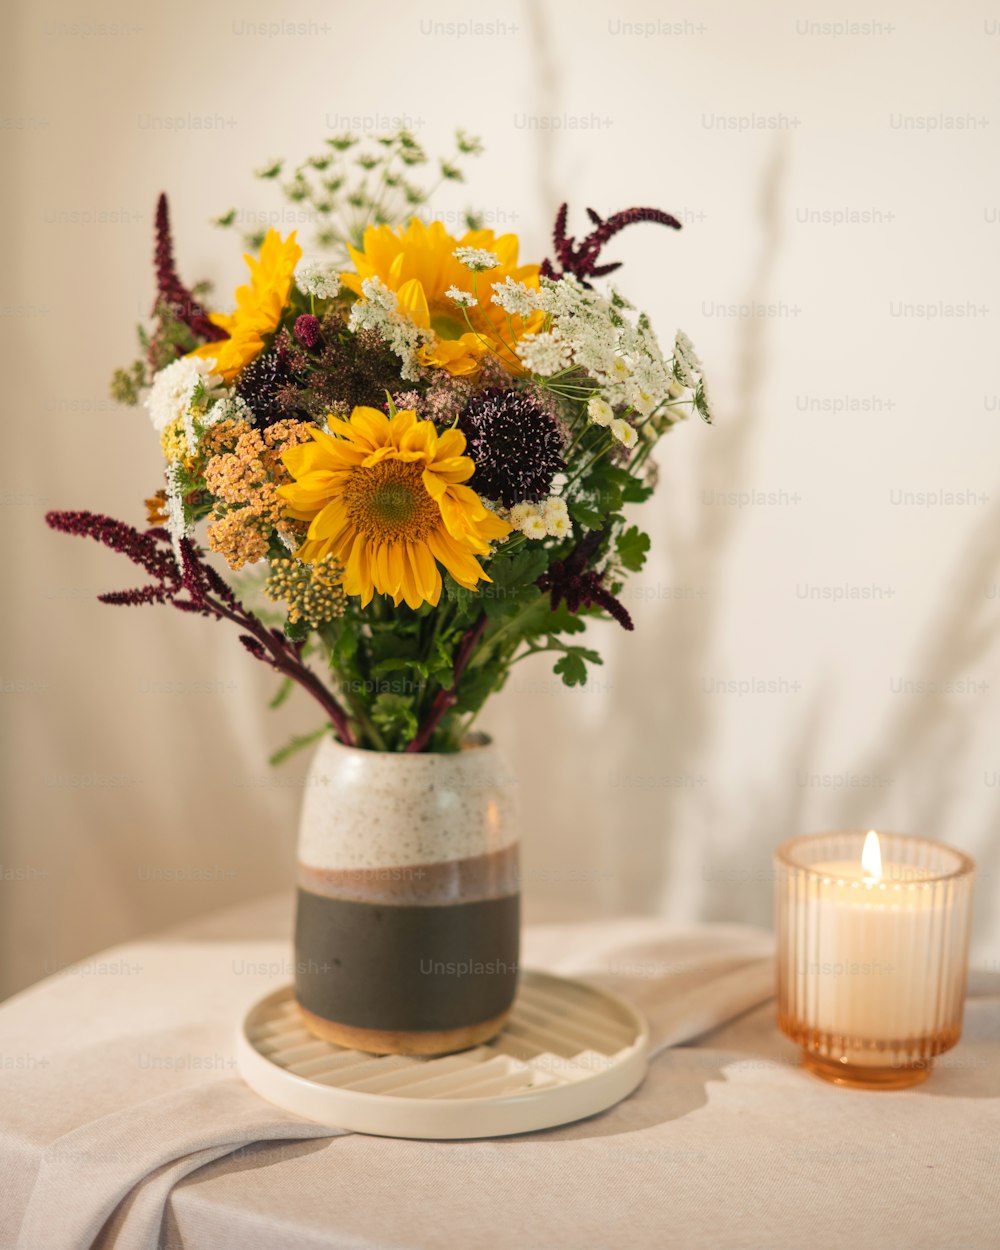 Un jarrón lleno de muchas flores encima de una mesa